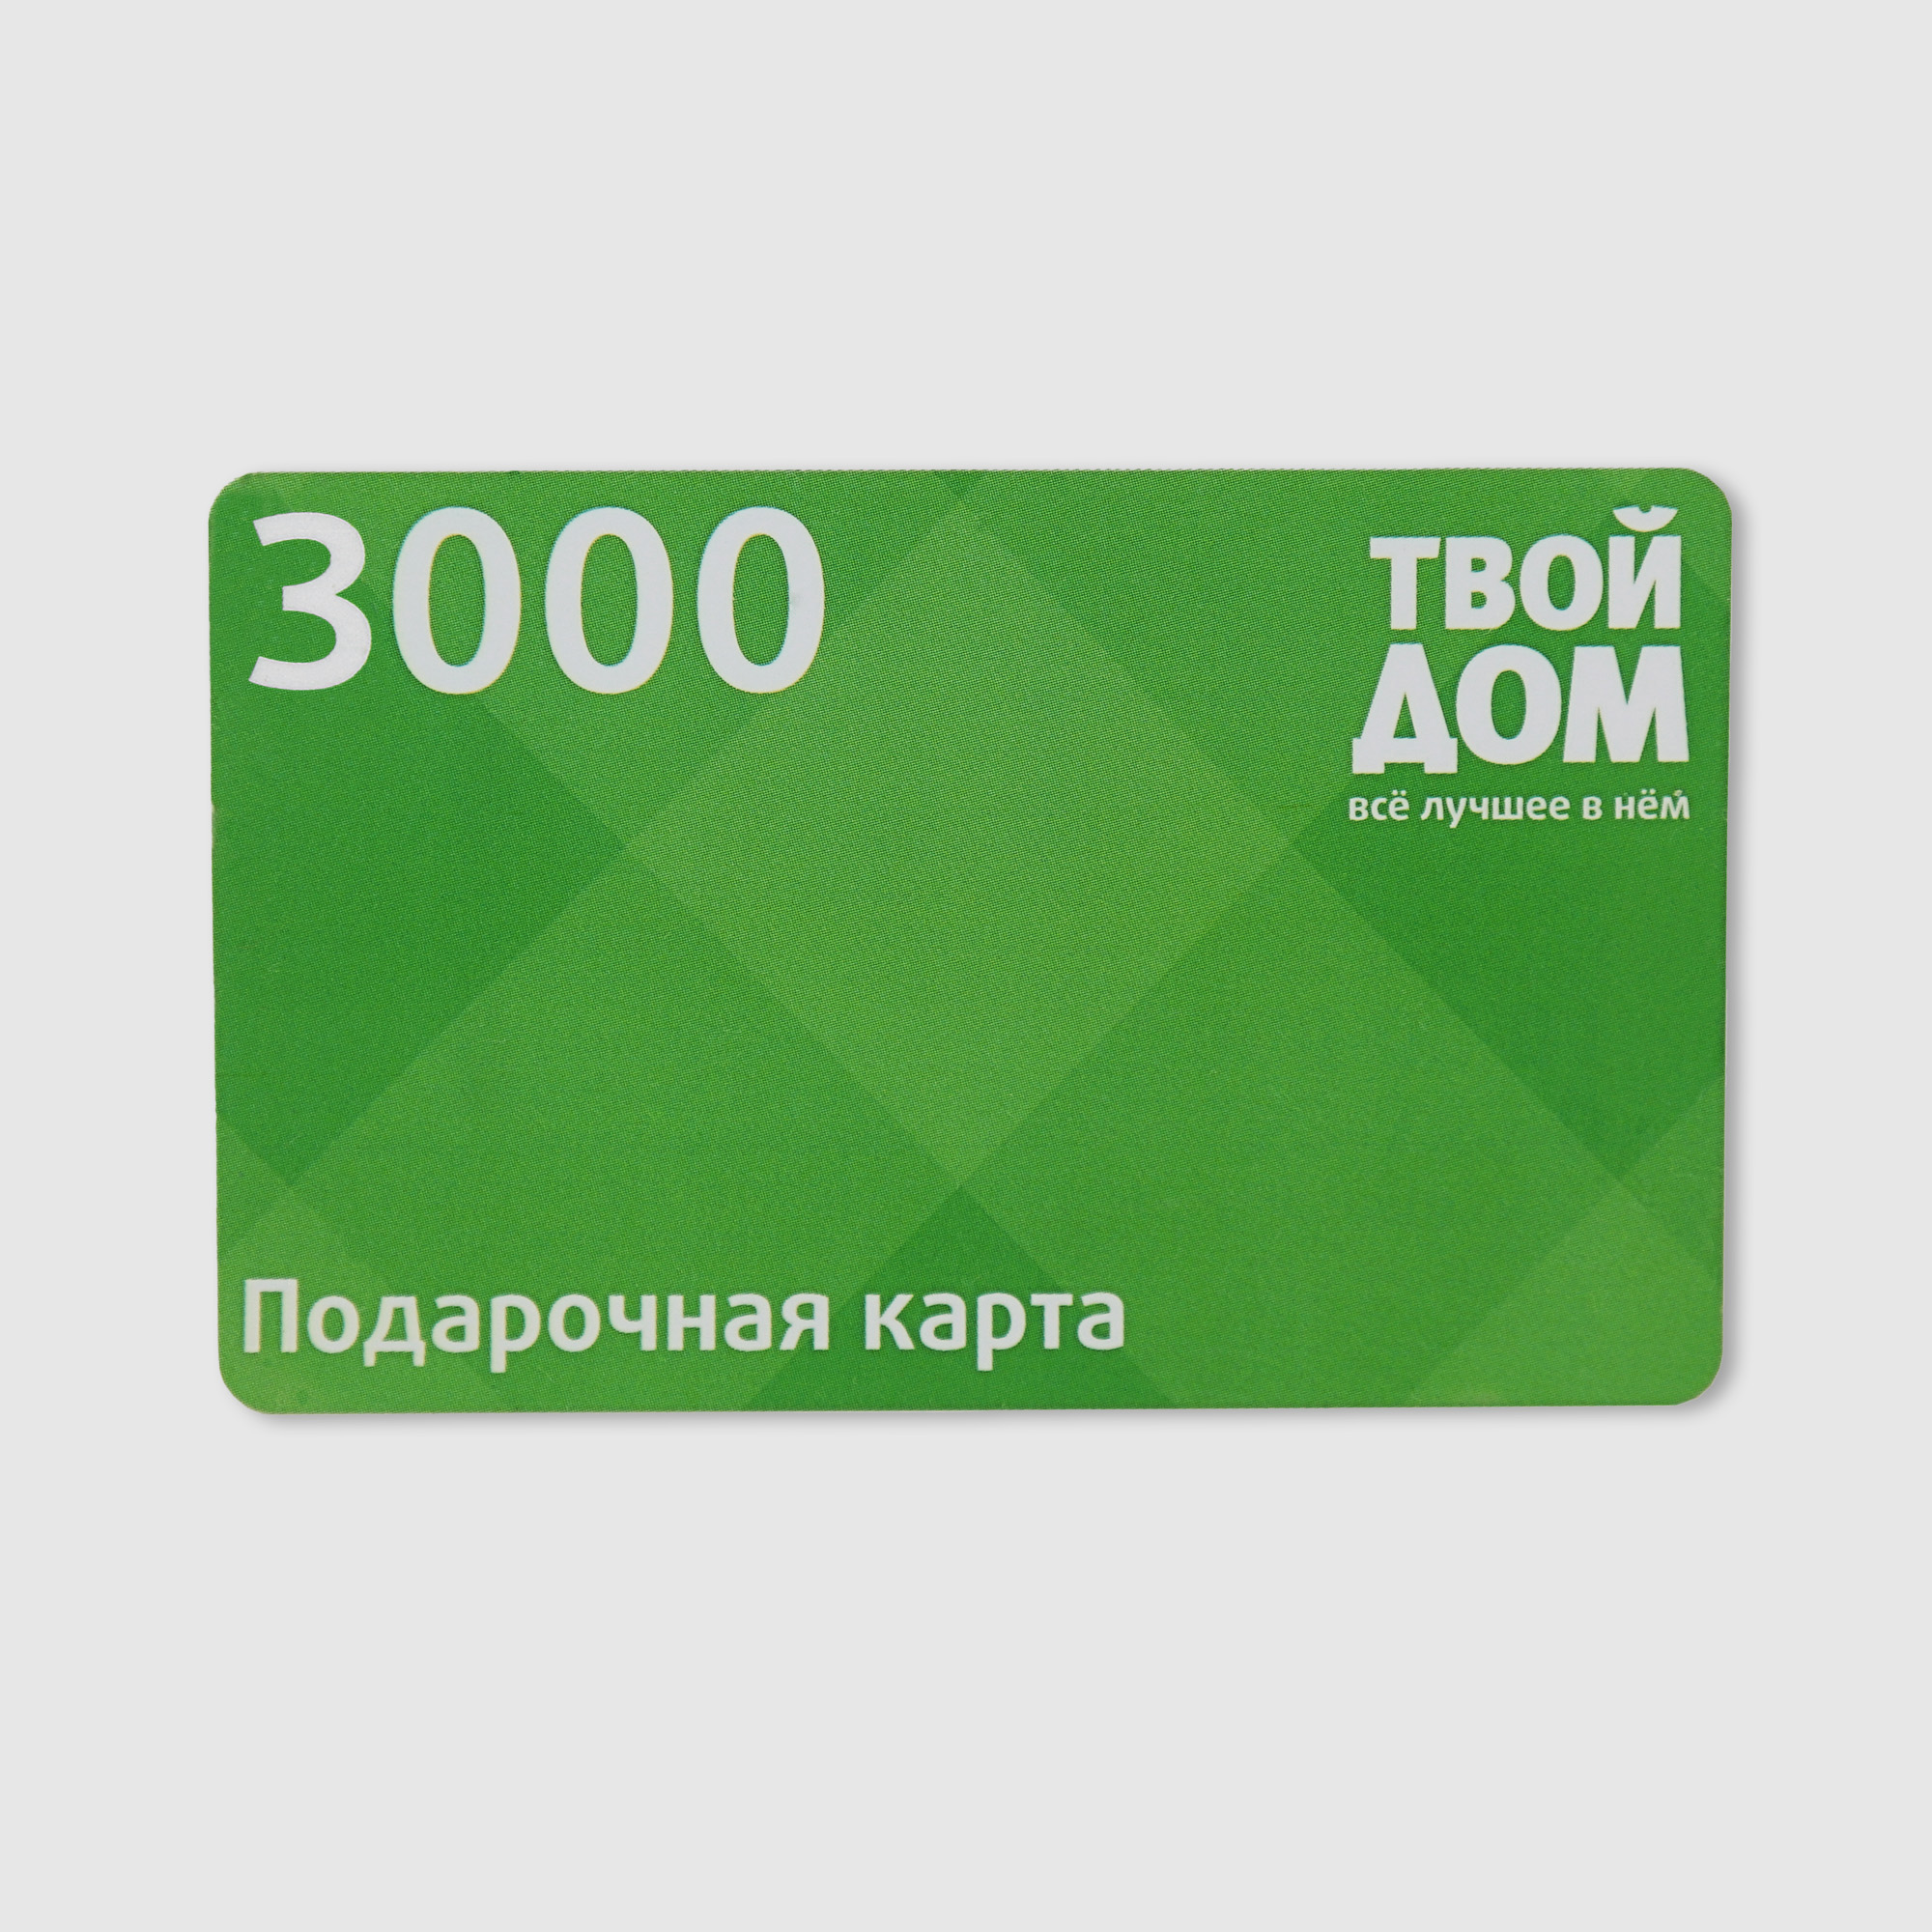 Подарочная карта Твой Дом Номинал 3000 электронная карта 3000 рублей